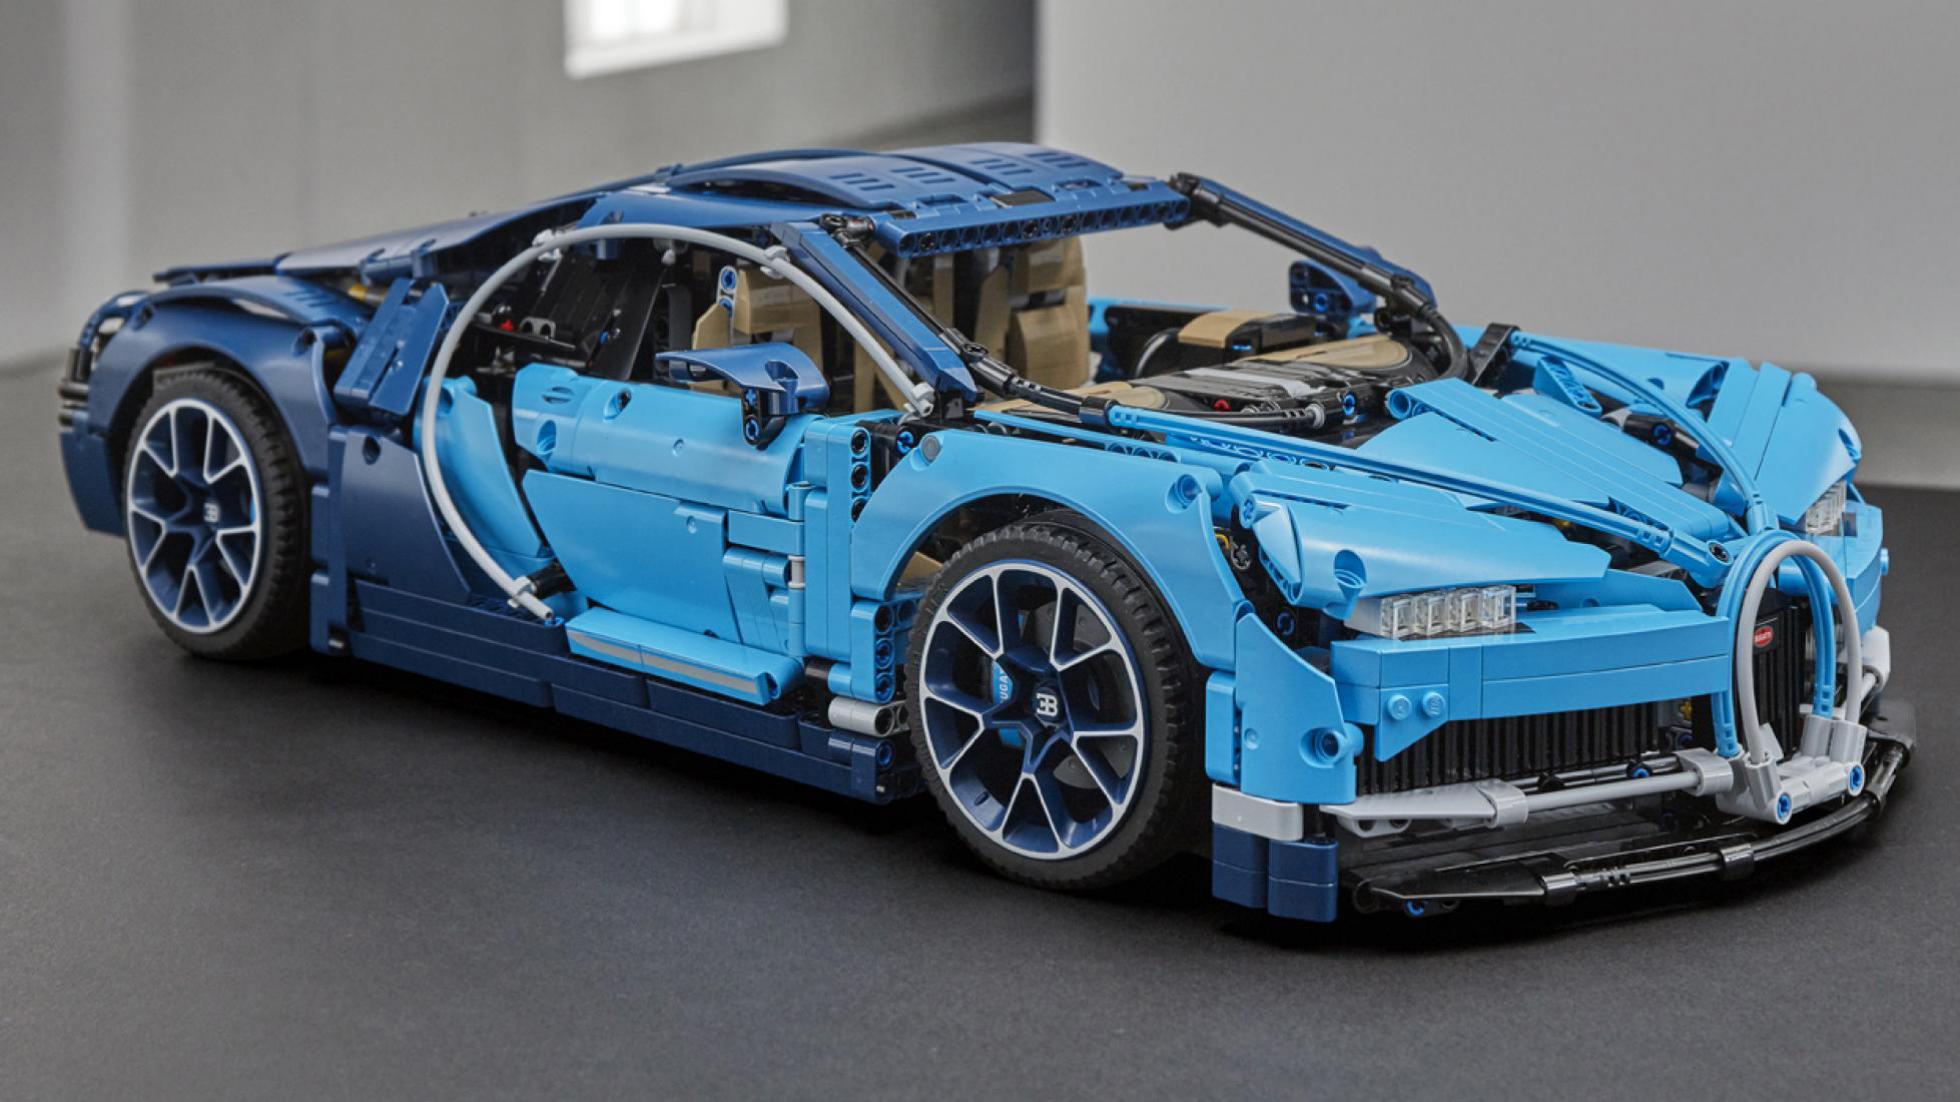 9. Lego Technic Bugatti Chiron